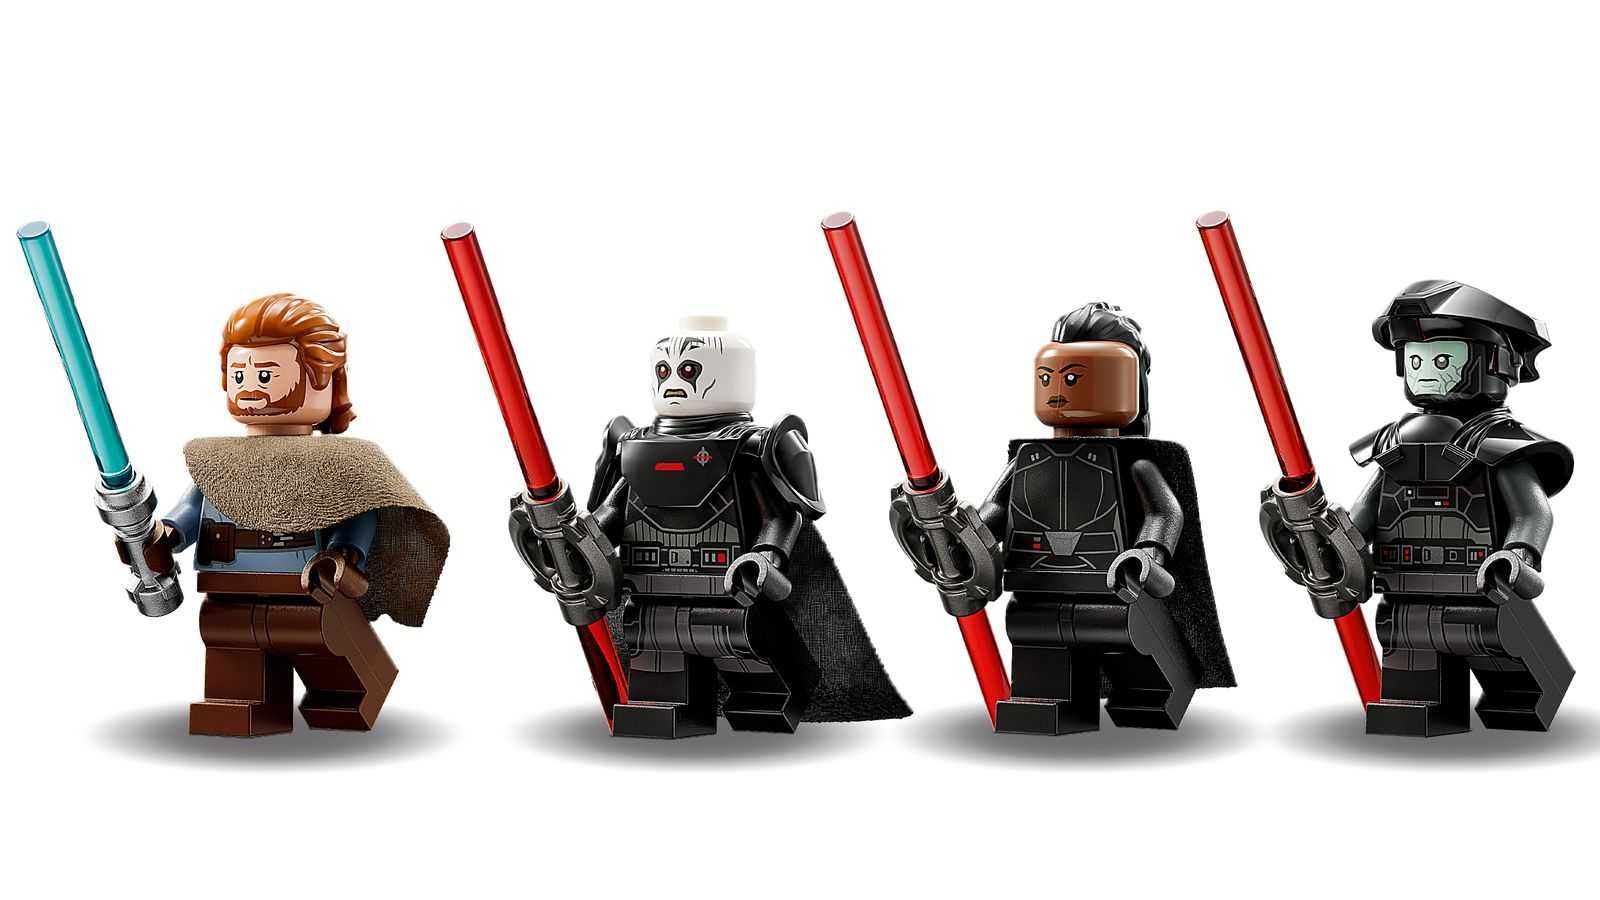 LEGO 75336 Star Wars - Transporter Inkwizytorów Scythe